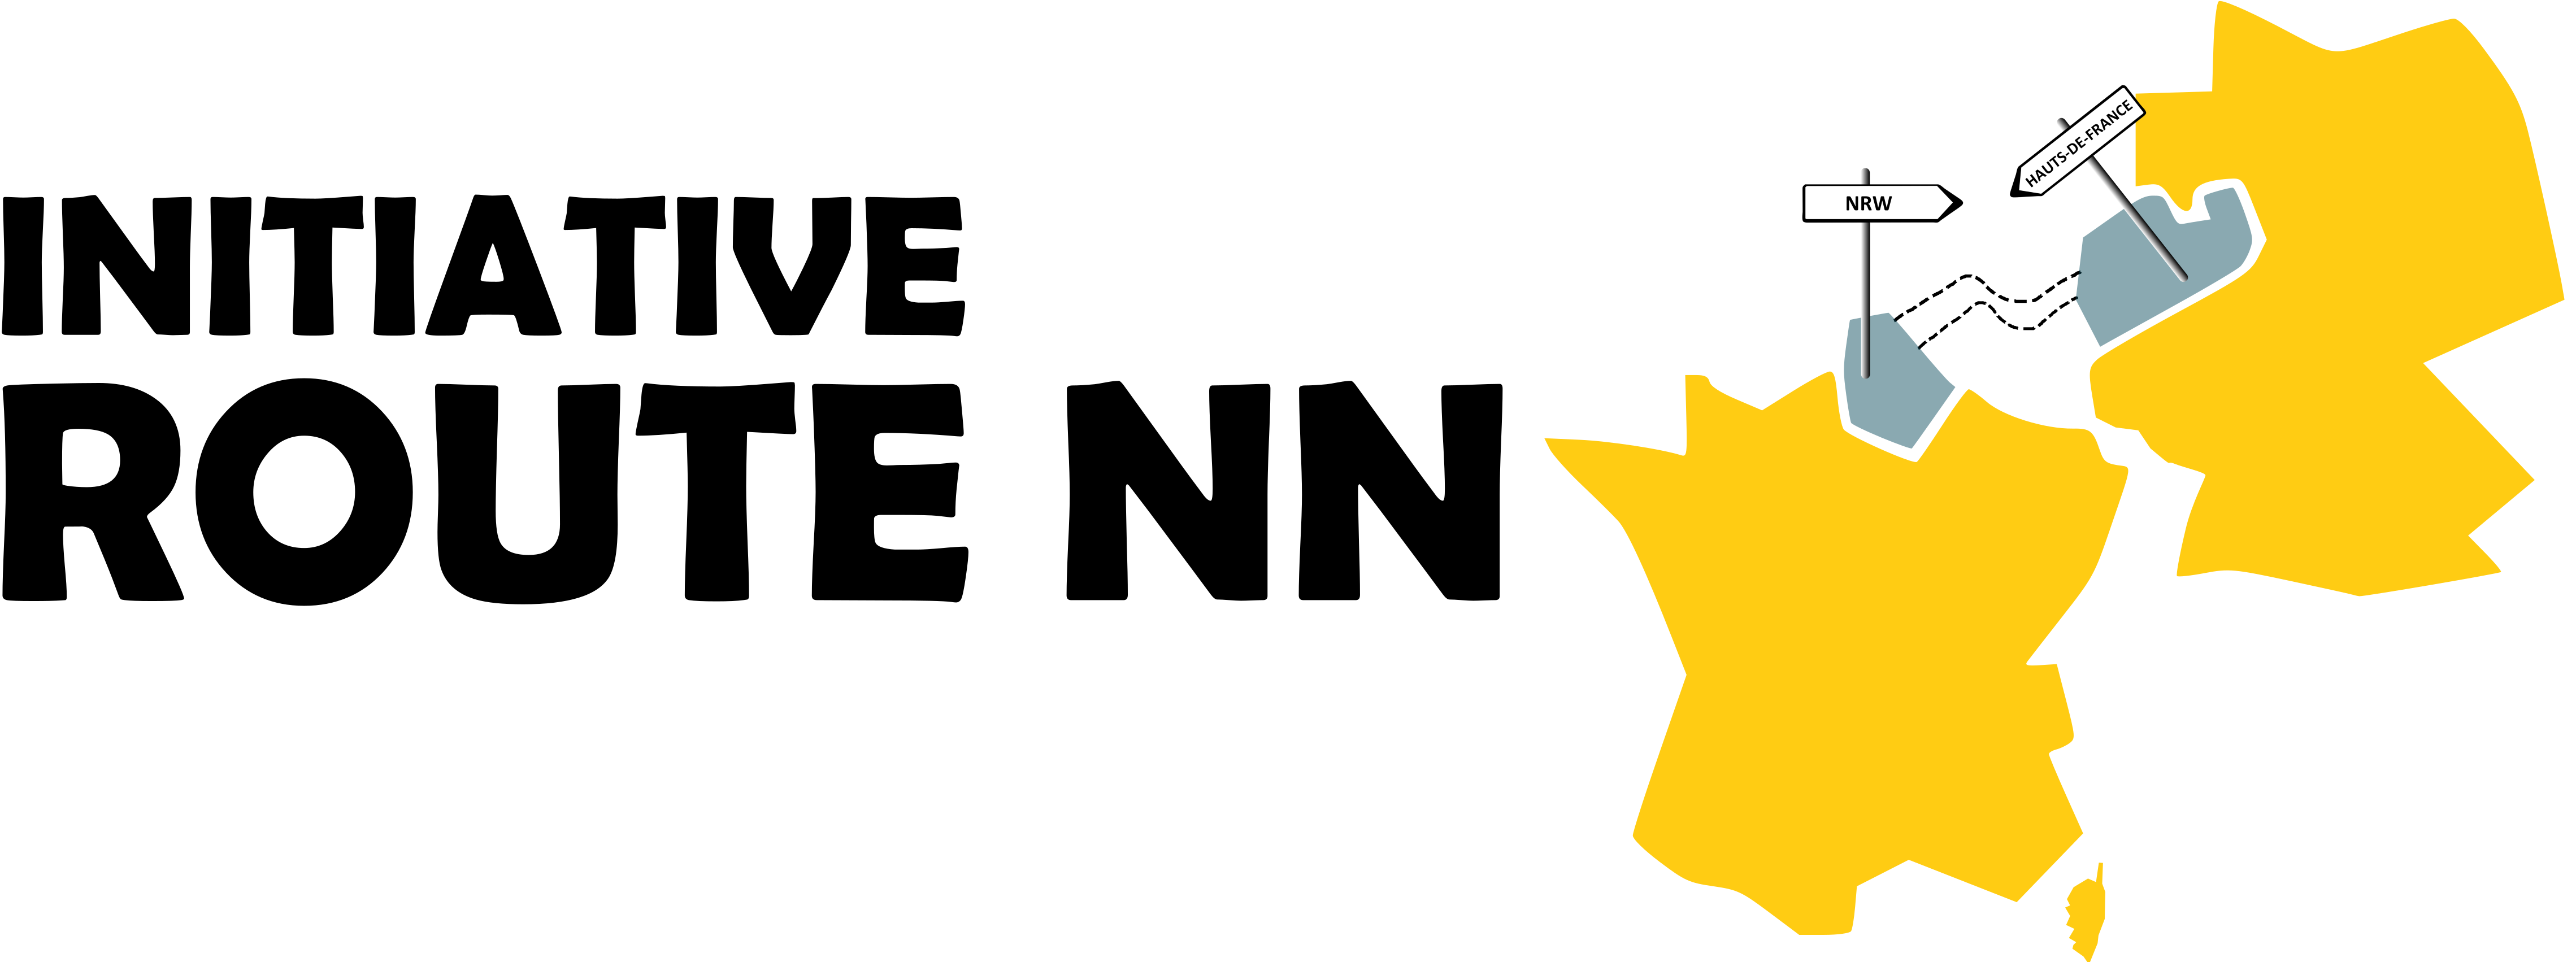 Initiative Route NN